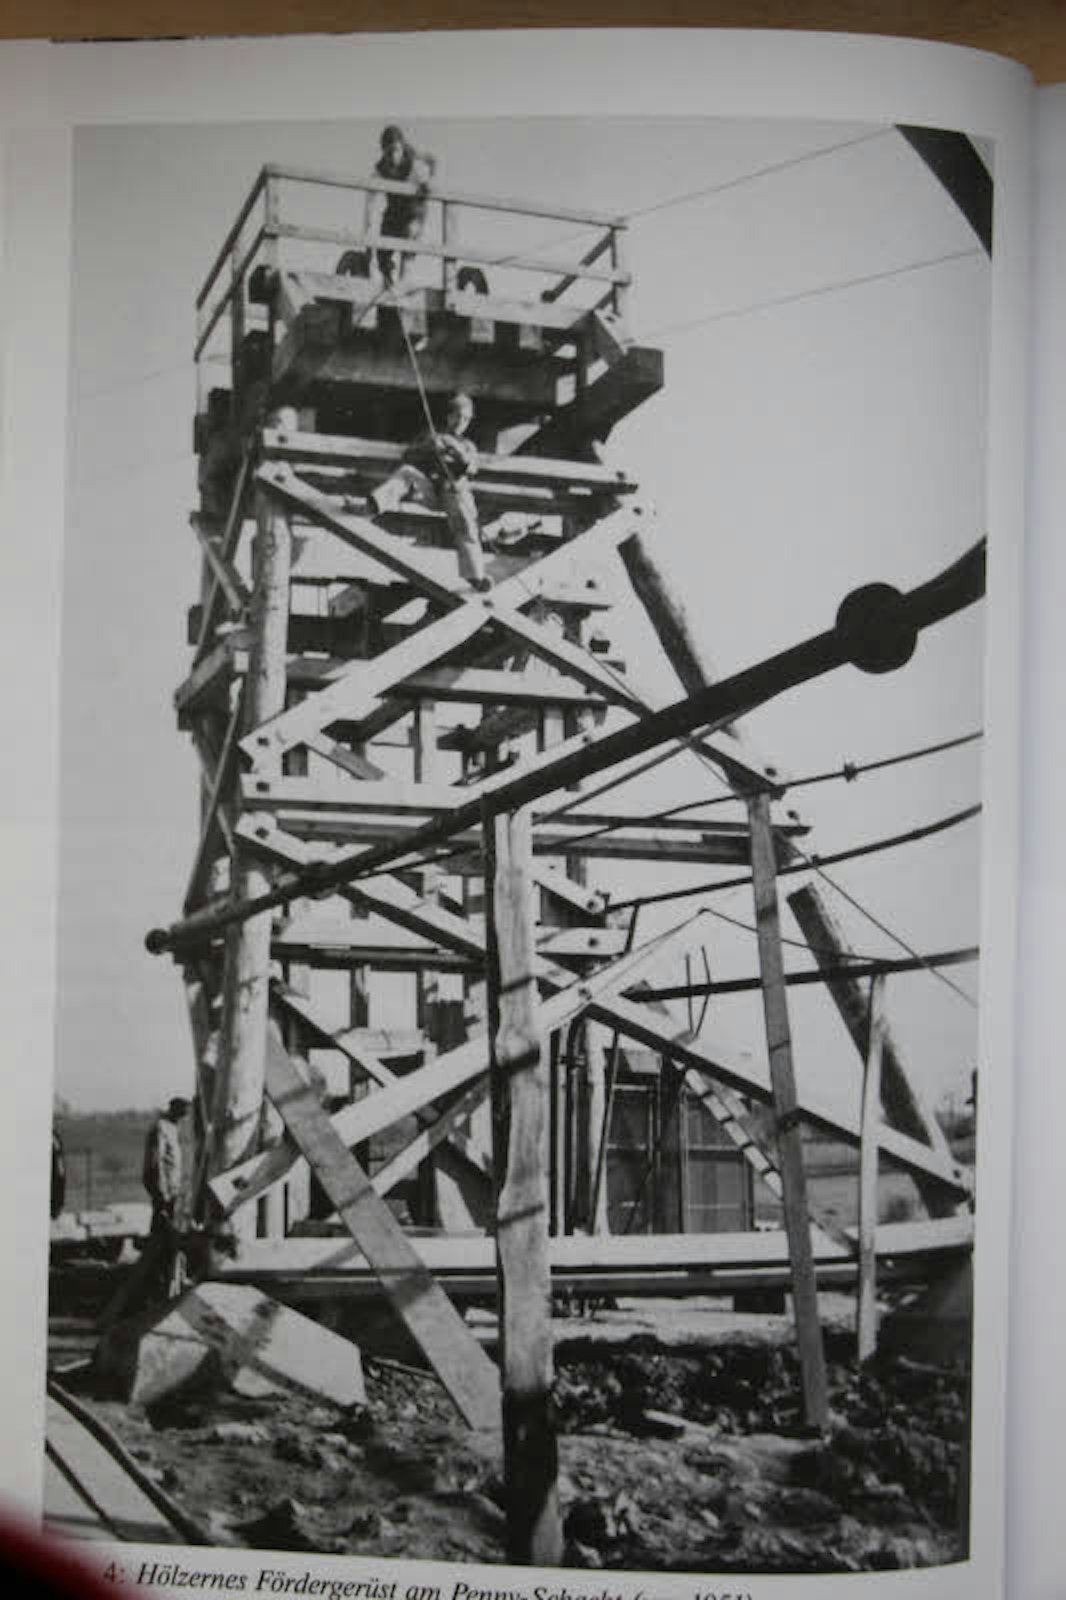 Ein Foto aus dem Jahr 1951 zeigt das hölzerne Fördergerüst der Grube Penny.